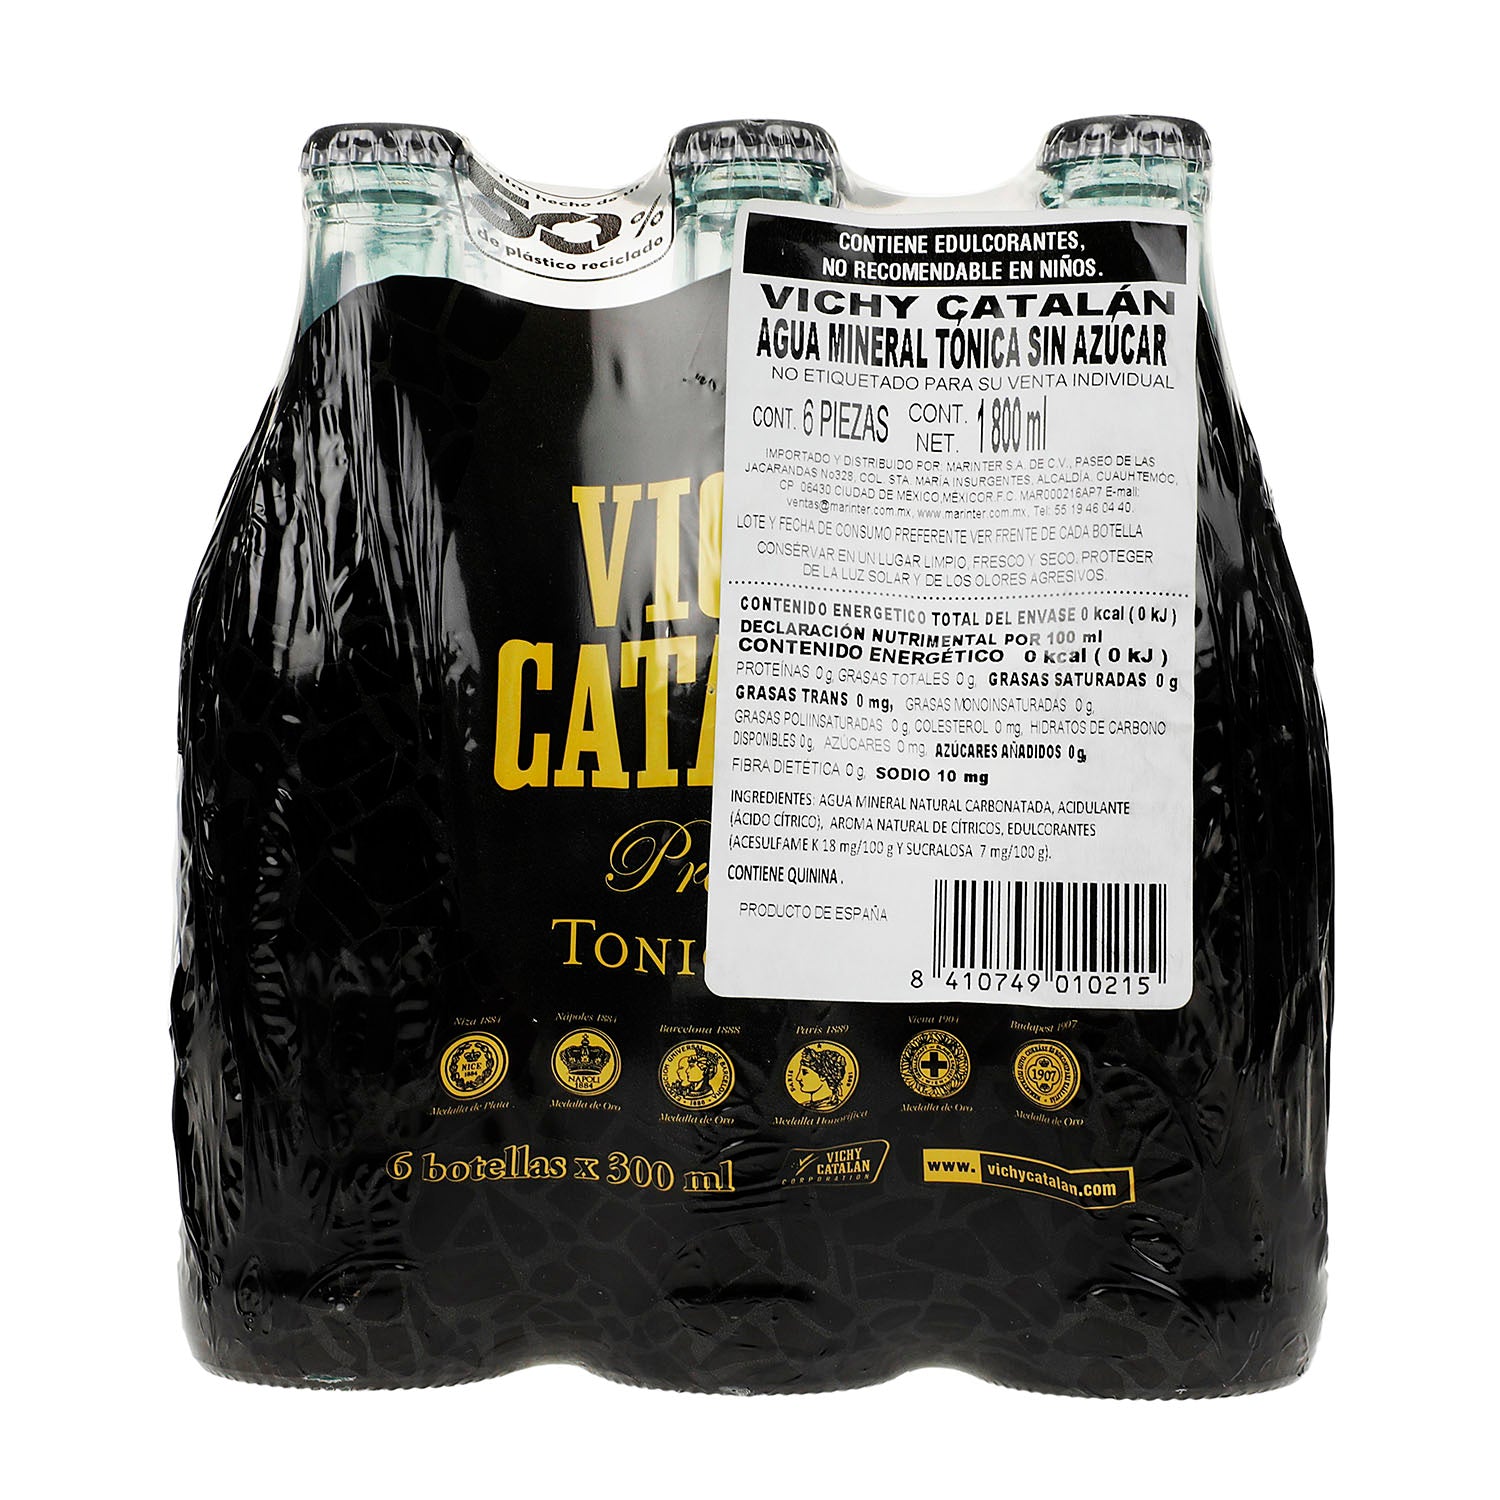 Agua Vichy Catalan Mineral Tonica Sixpack de 300 ml